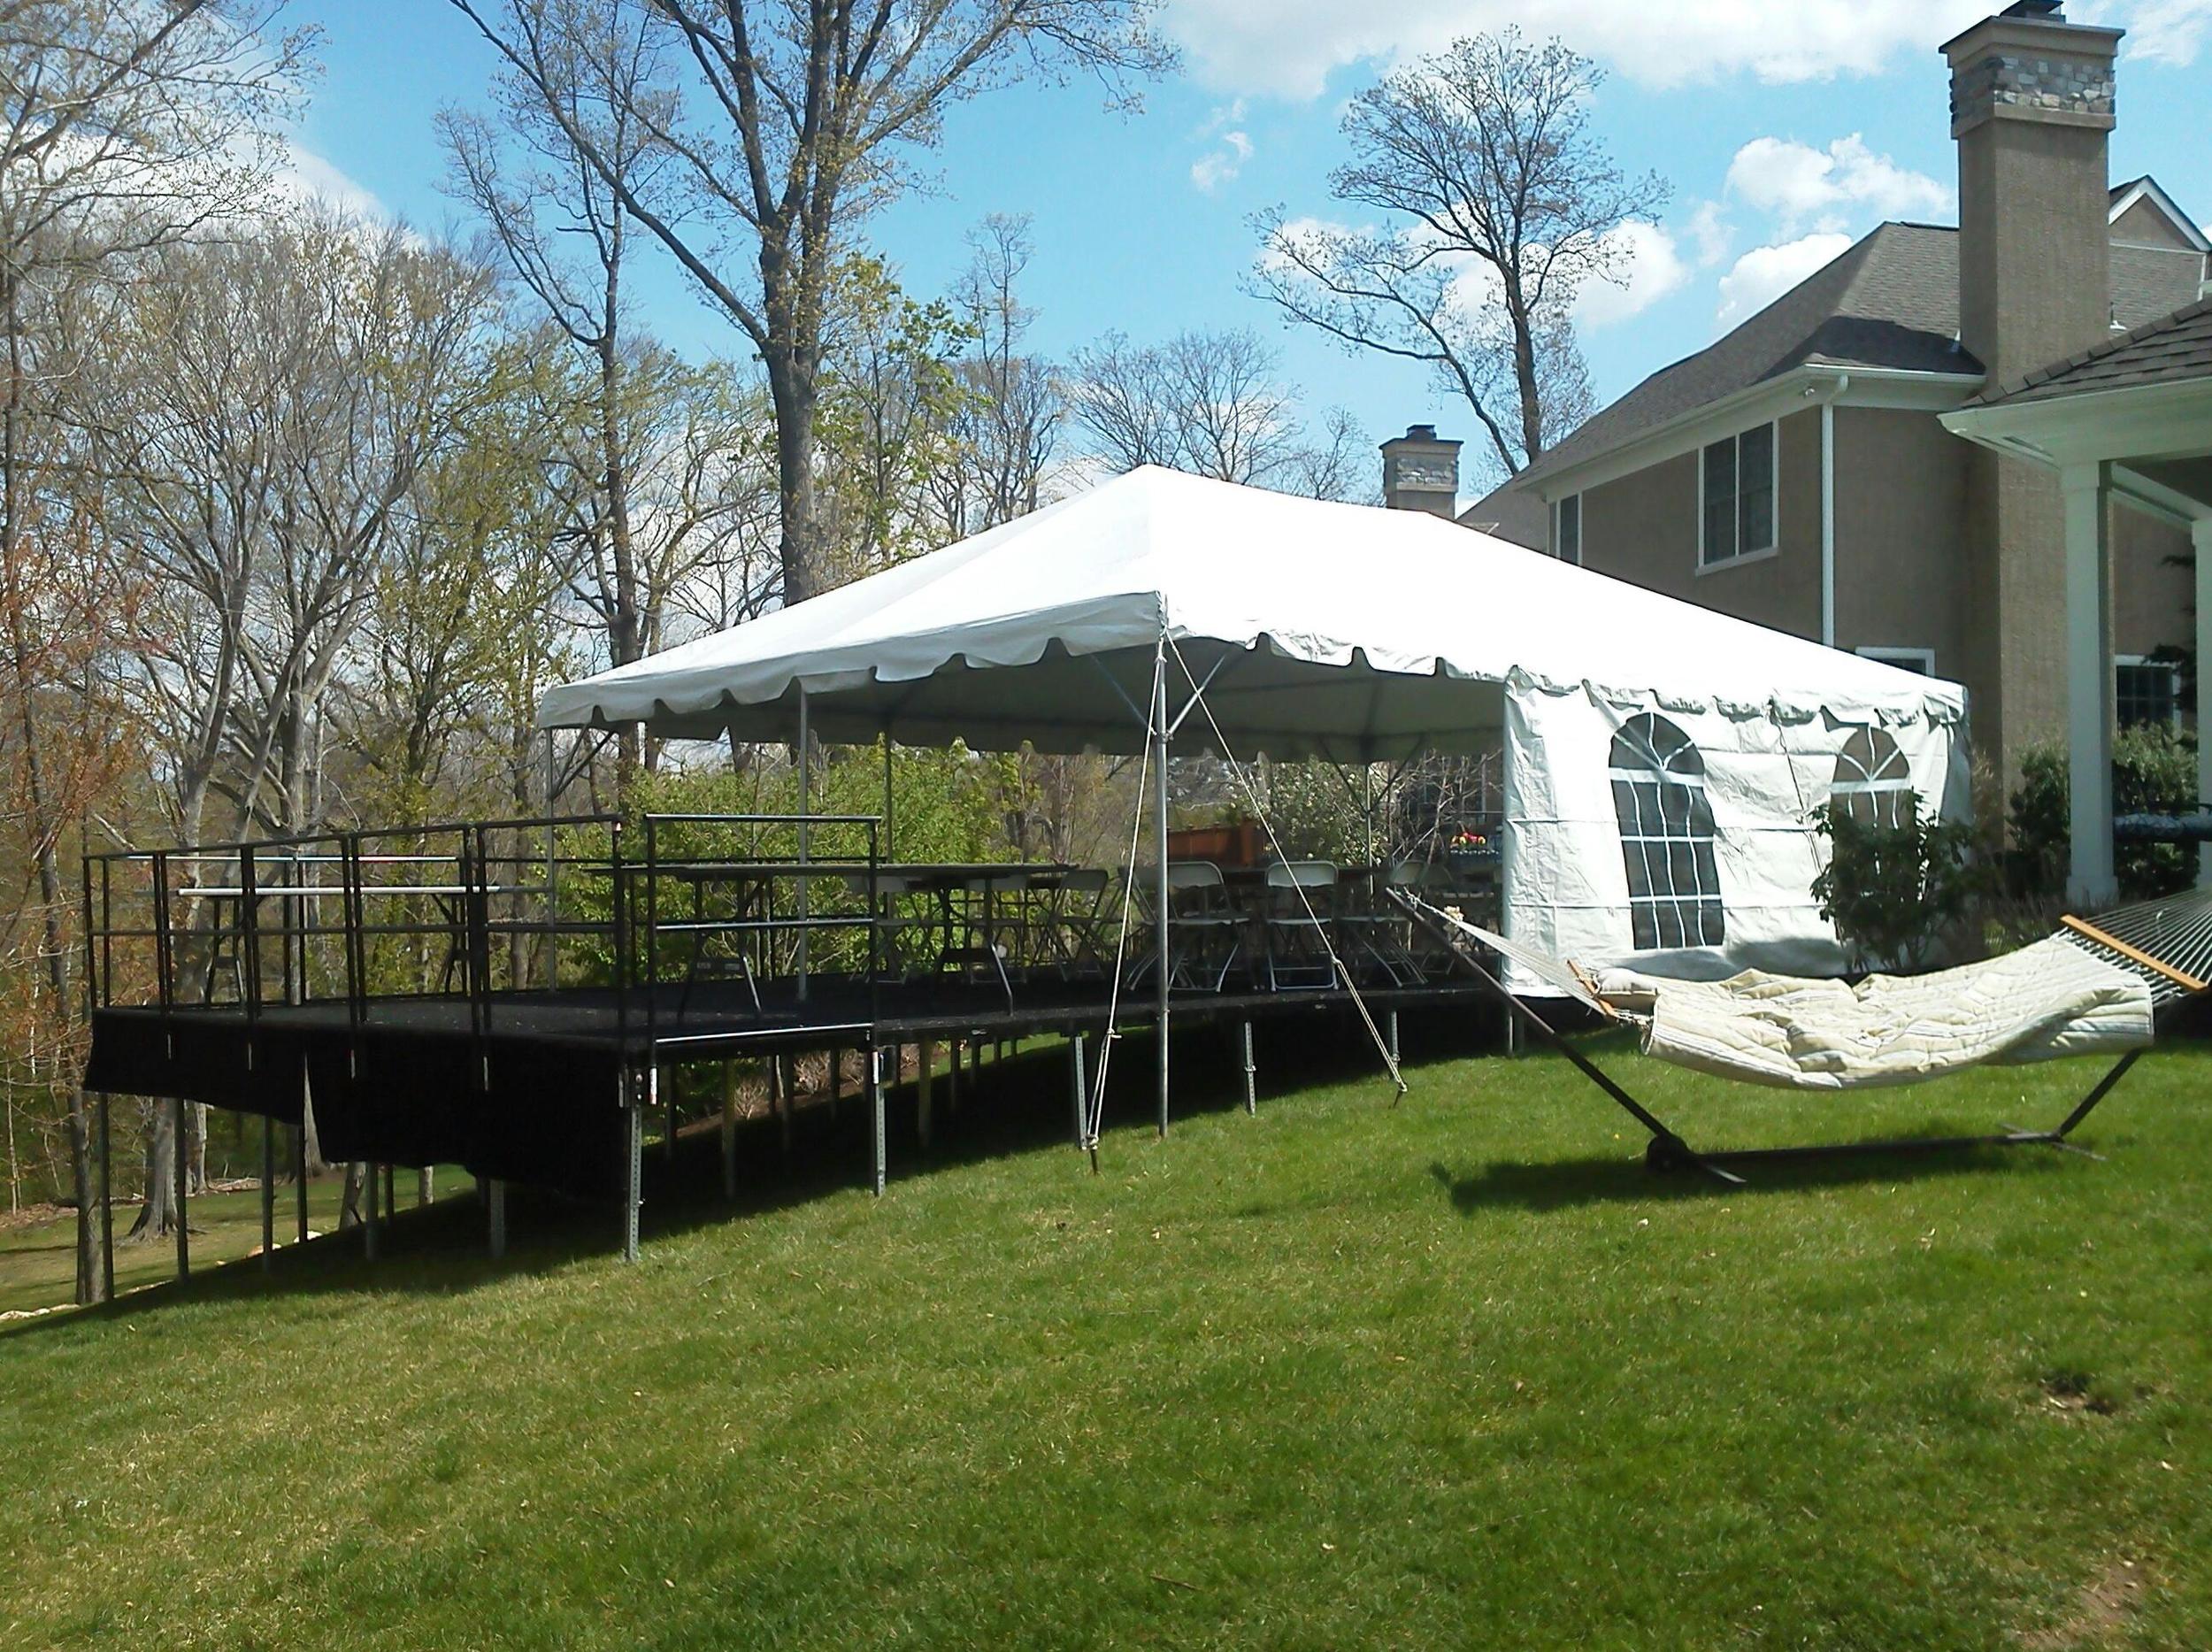 Tent on a raised platform/stage